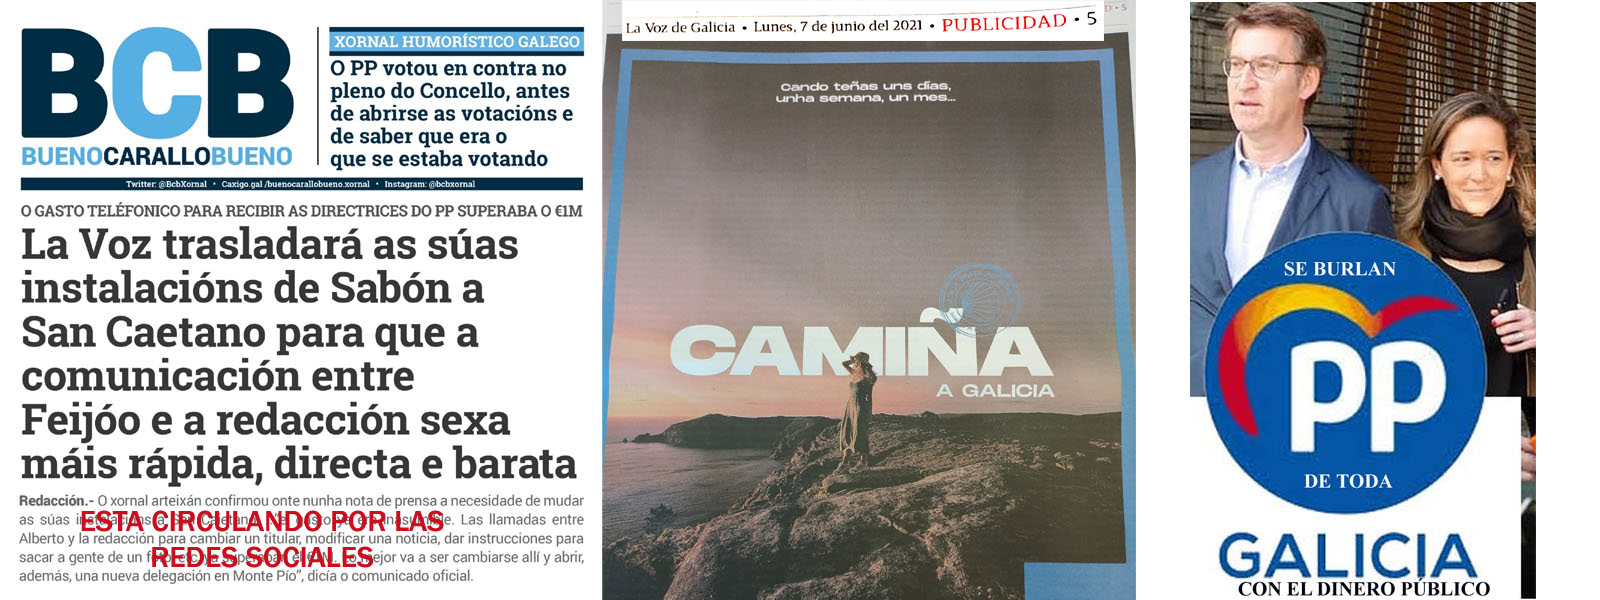 Mar Sánchez Sierra usa la Voz para burlarse y provocar a la sociedad  Gallega. | Xornal Galicia